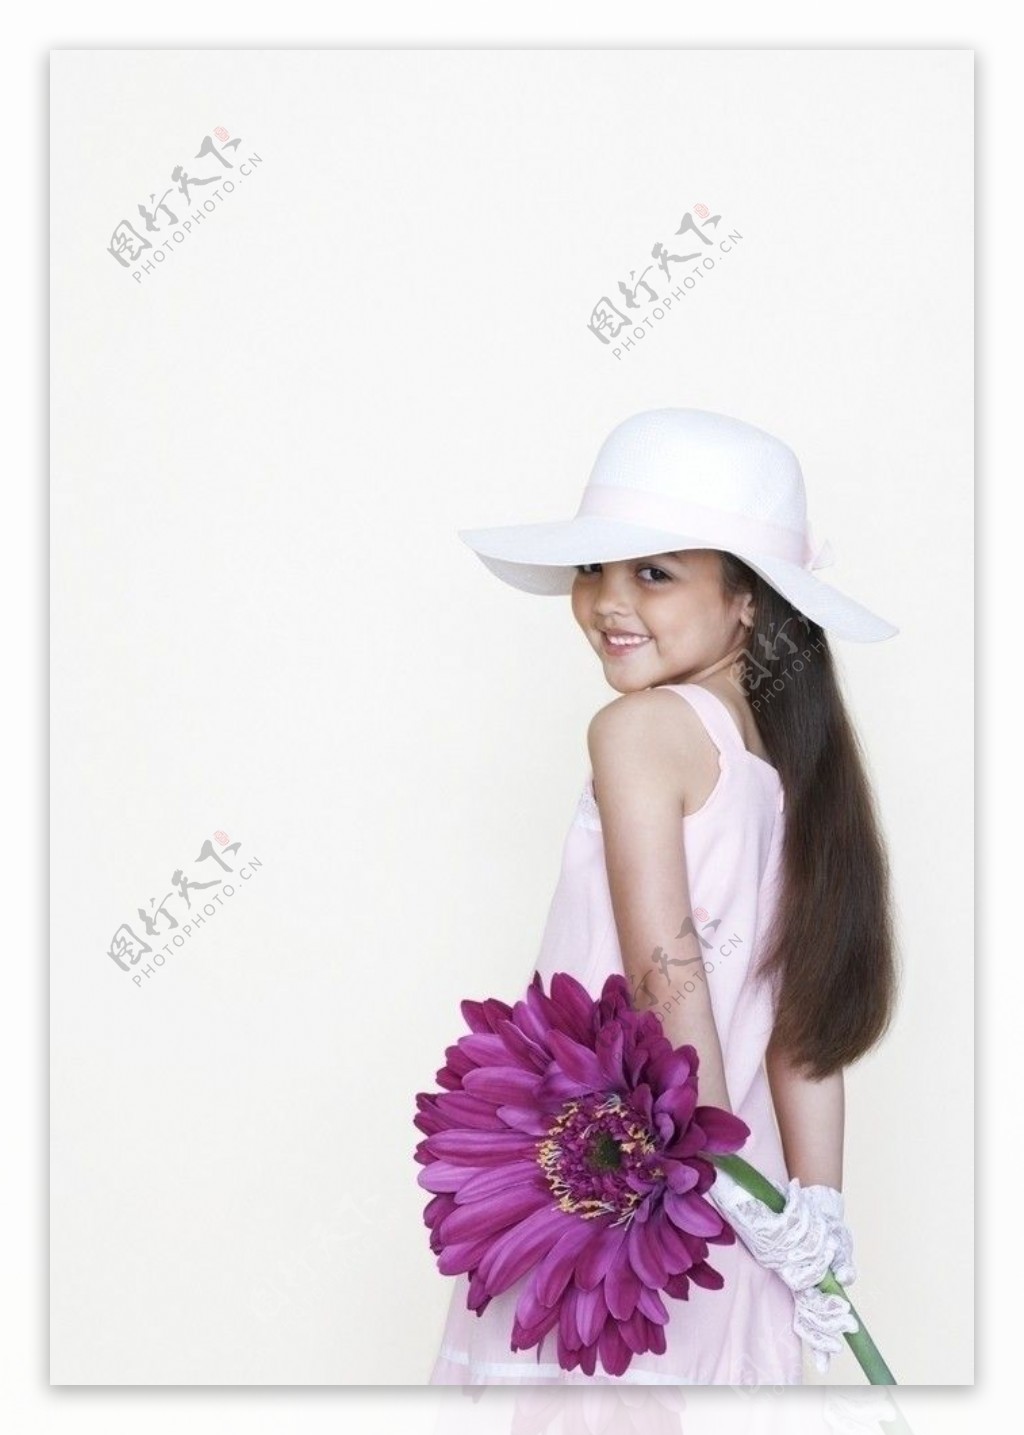 背手拿着鲜花的灿烂小女孩图片